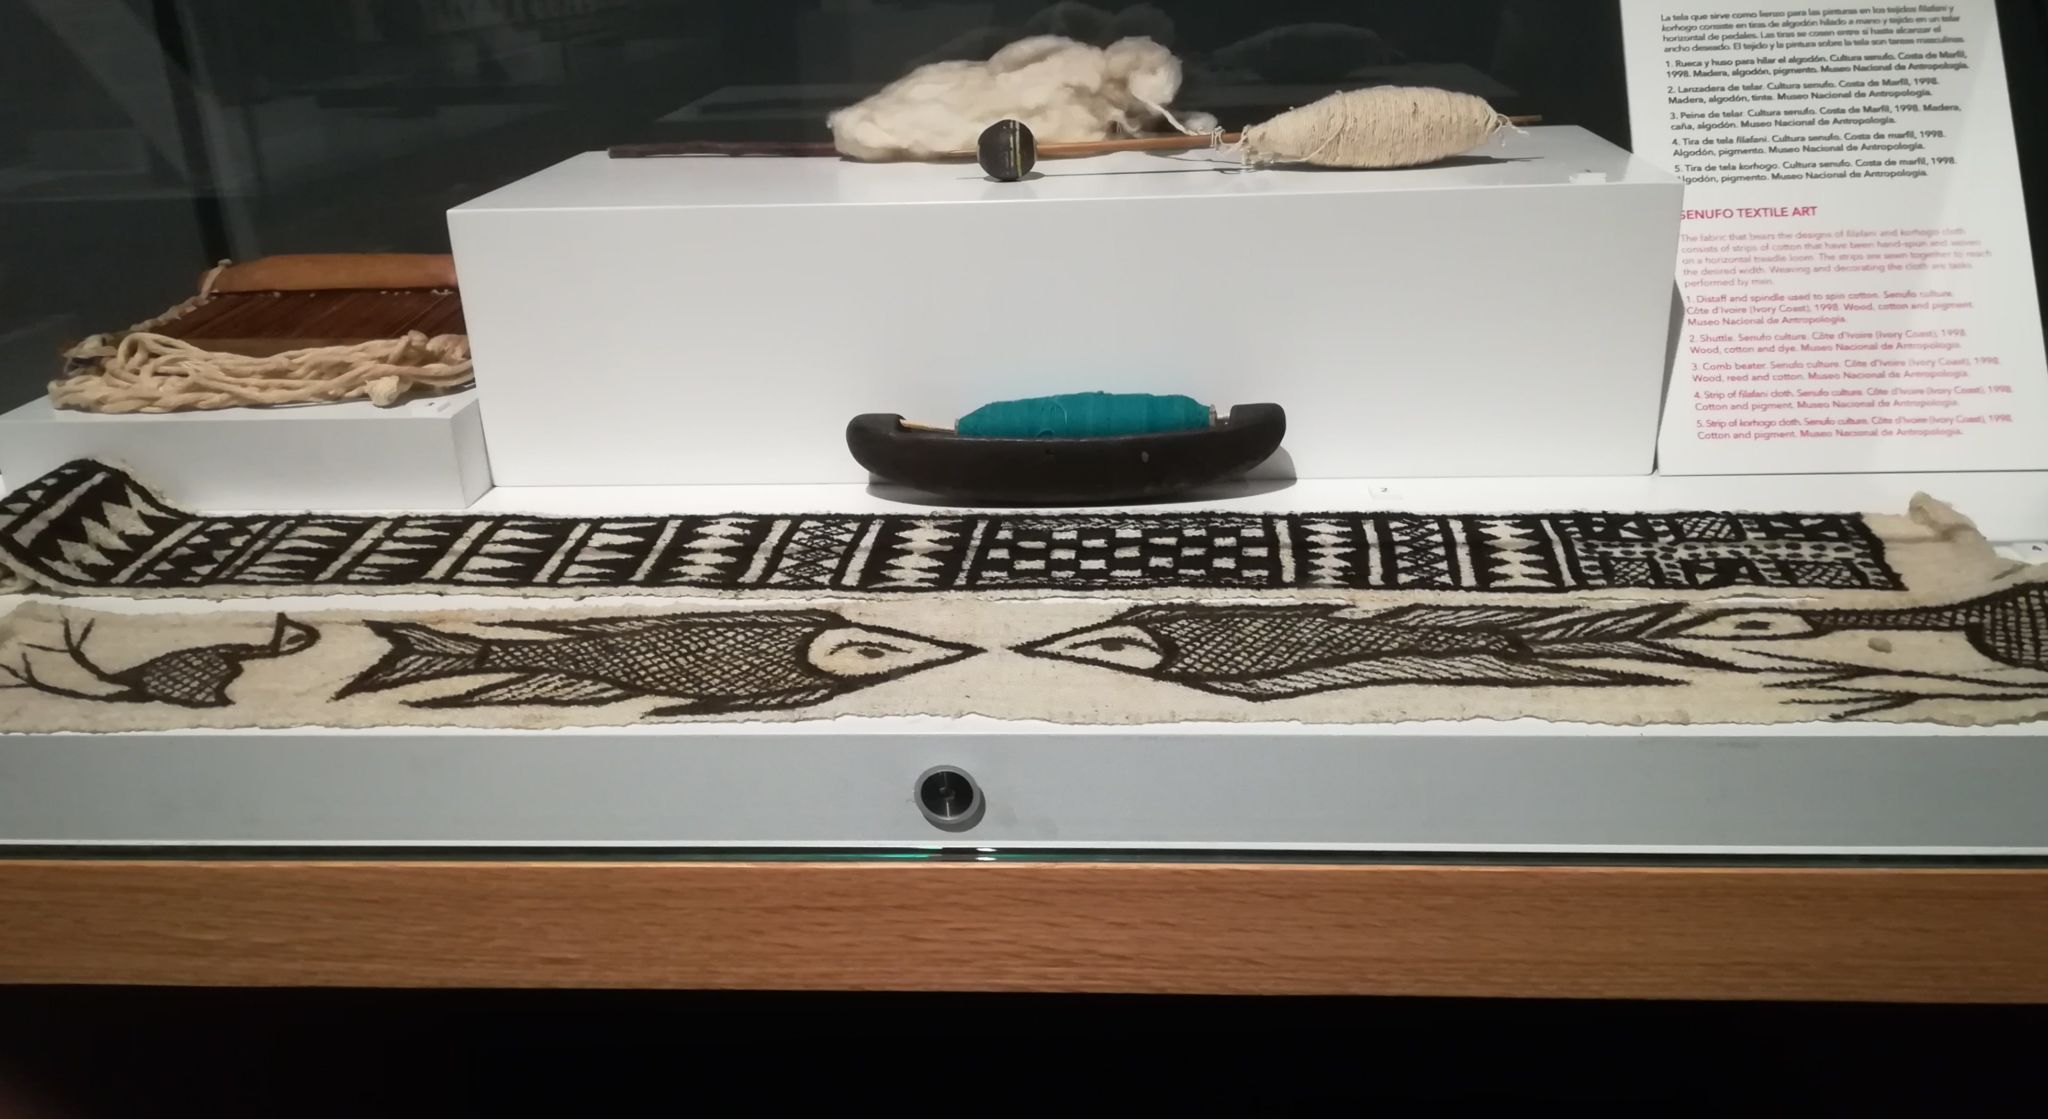 Vitrina sobre el arte textil de la cultura senufo expuesta en el Museo Nacional de Antropología.